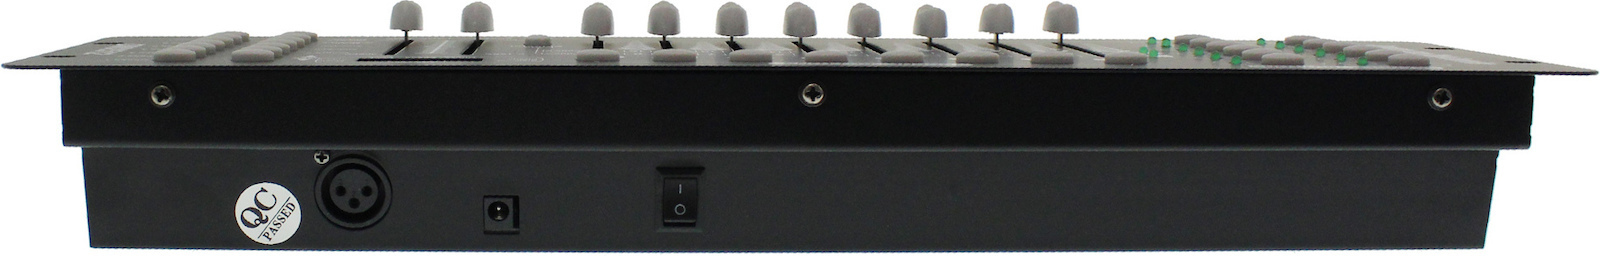 Κονσόλα Φωτισμού με 192 Κανάλια Ελέγχου και Τοποθέτηση Rack 512 Light DMX